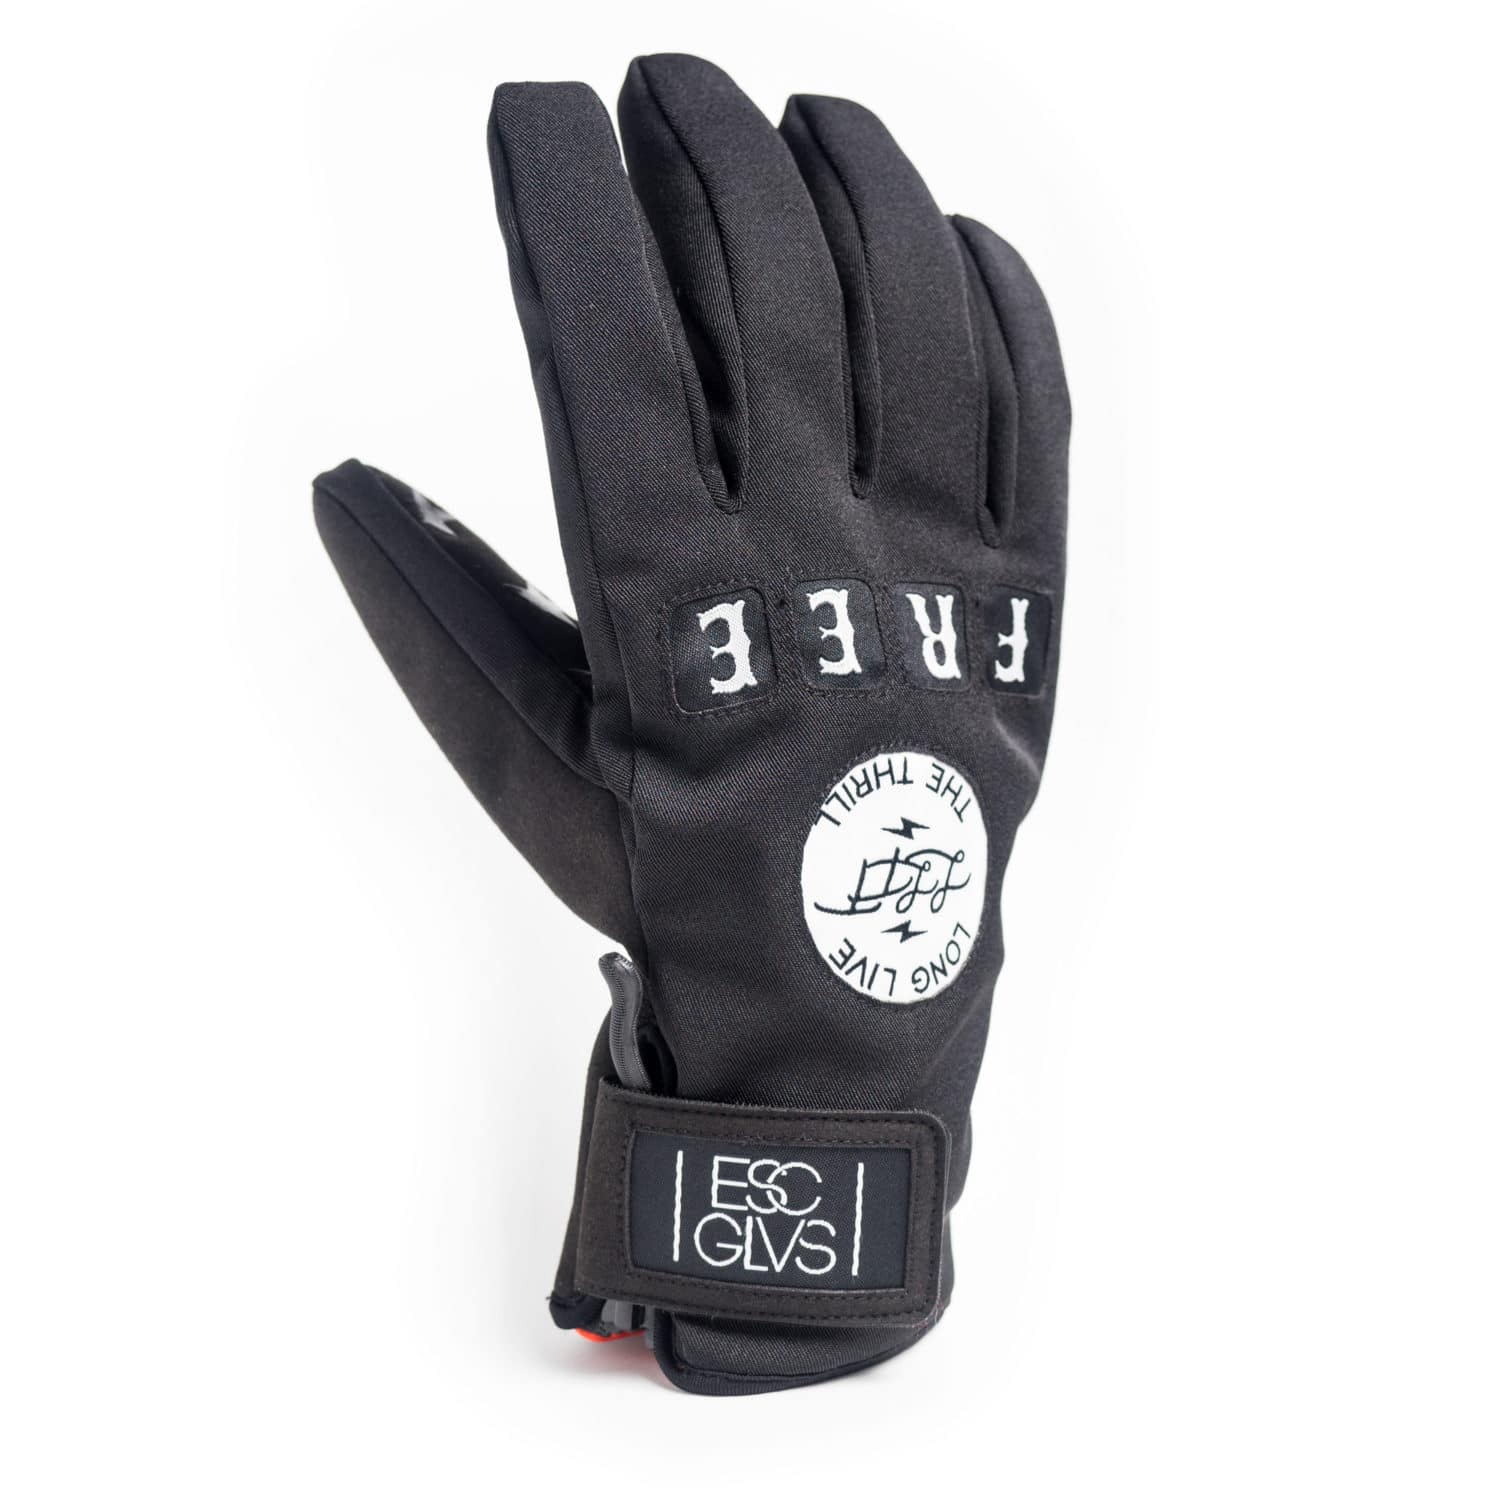 FREE-RIDE GLOVE - MISFIT OPPS, ESC Gloves